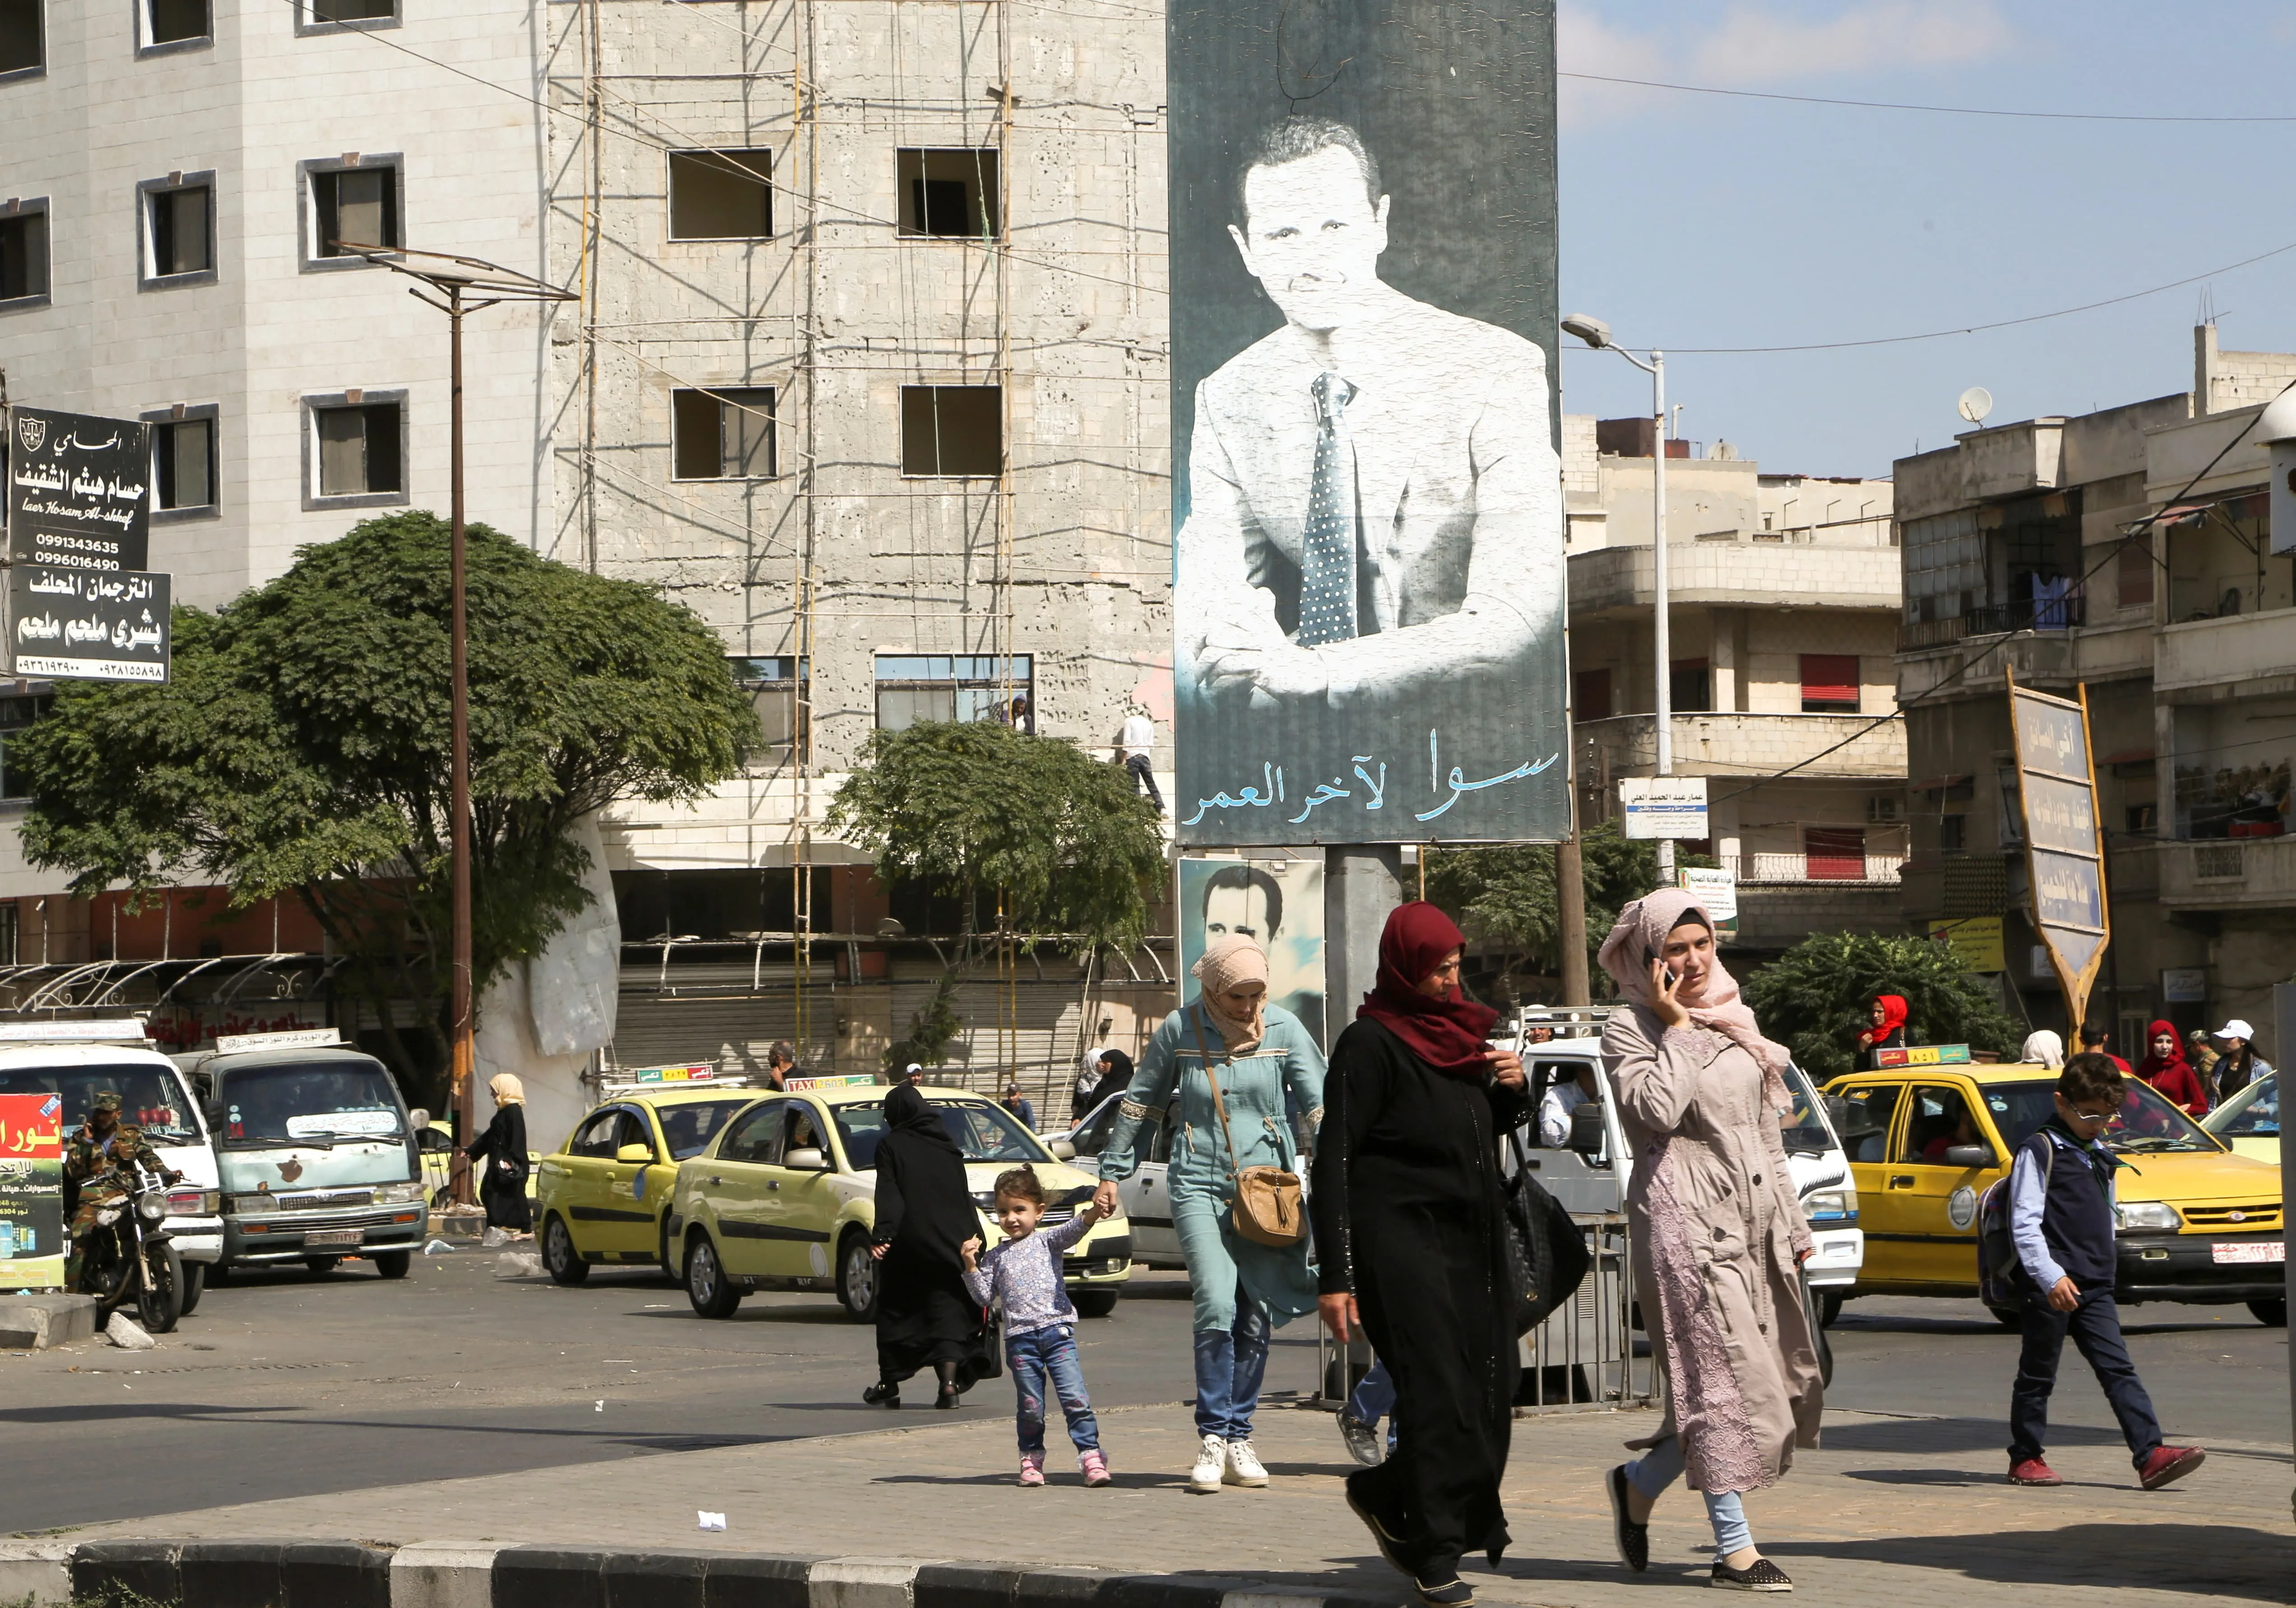 خبيرة موالية تكشف أرقام صادمة حول التضخم وتضاعف الأسعار في سوريا